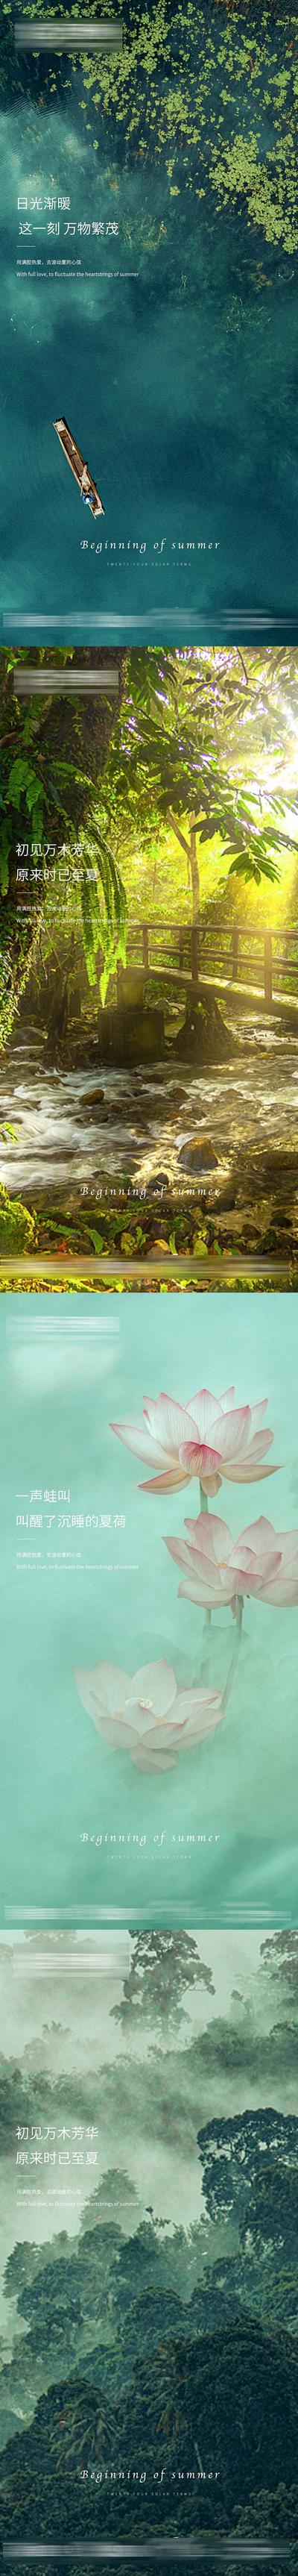 南门网 广告 海报 节气 立夏 风景 湖面 清新